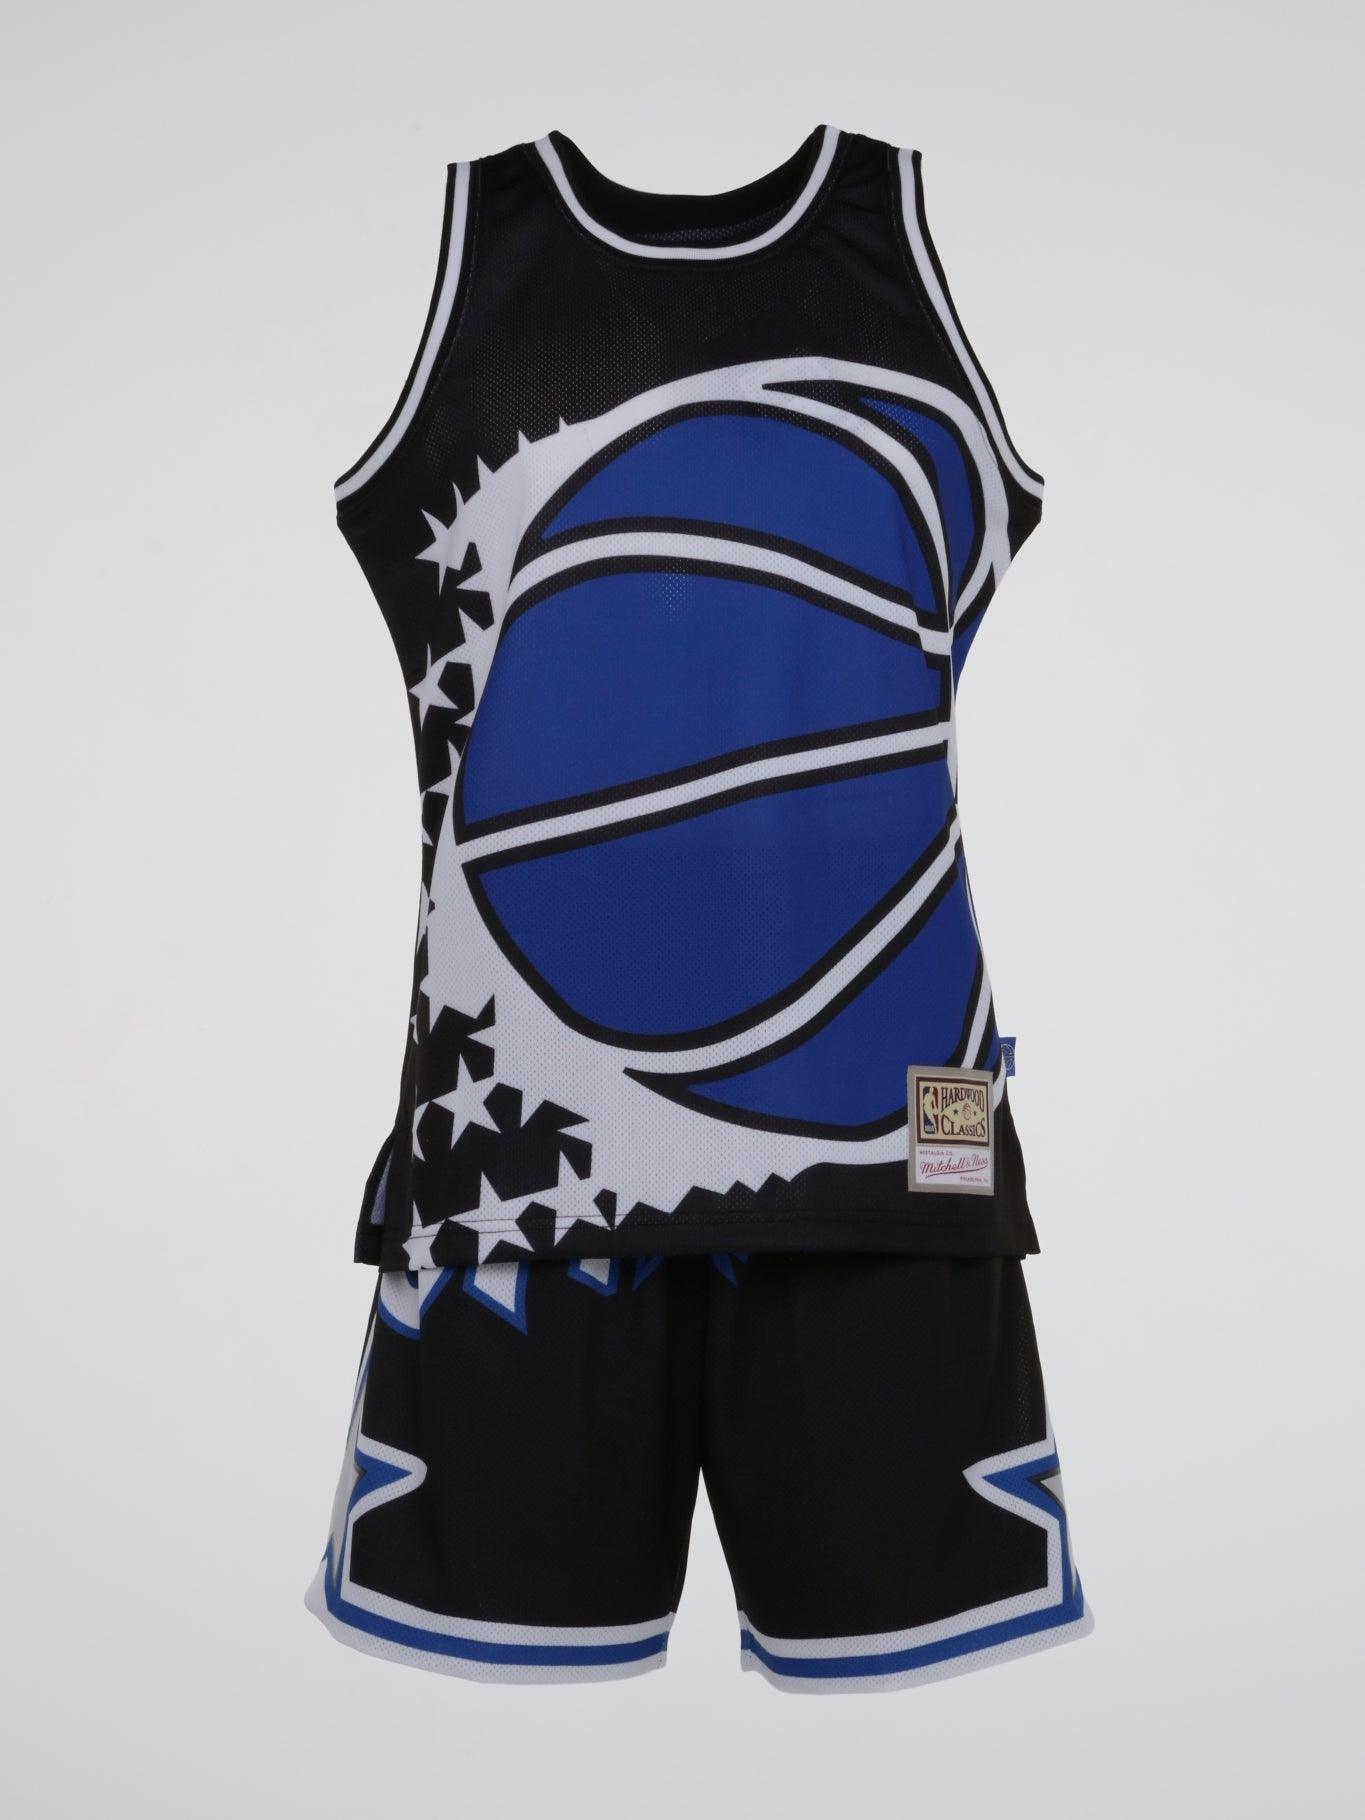 Orlando Magic Blue Hardwood Classics Shorts - Basketball Shorts Store